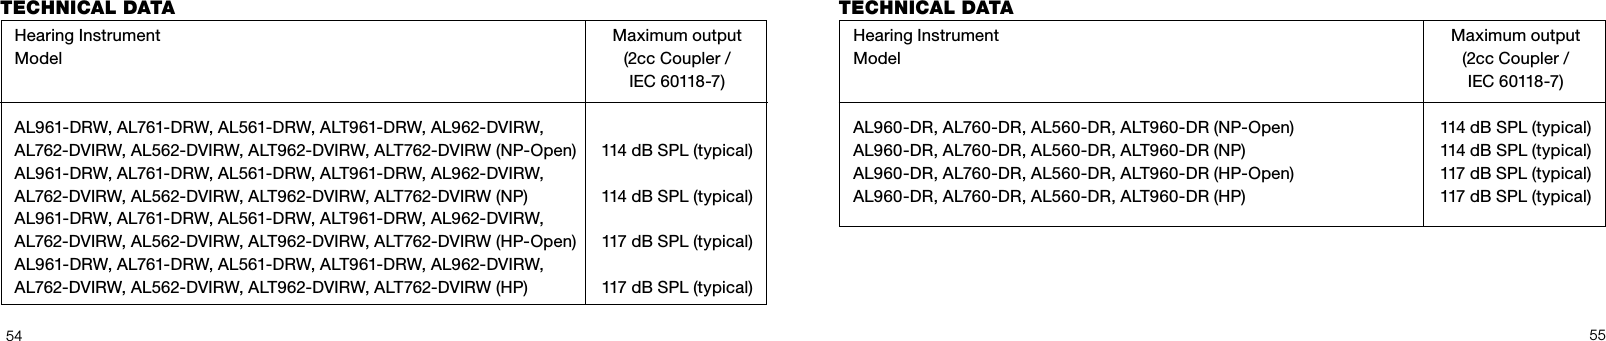 5455TECHNICAL DATA   Hearing Instrument   Maximum output  Model  (2cc Coupler /     IEC 60118-7)    AL961-DRW, AL761-DRW, AL561-DRW, ALT961-DRW, AL962-DVIRW,   AL762-DVIRW, AL562-DVIRW, ALT962-DVIRW, ALT762-DVIRW (NP-Open)  114 dB SPL (typical)  AL961-DRW, AL761-DRW, AL561-DRW, ALT961-DRW, AL962-DVIRW,   AL762-DVIRW, AL562-DVIRW, ALT962-DVIRW, ALT762-DVIRW (NP)  114 dB SPL (typical)  AL961-DRW, AL761-DRW, AL561-DRW, ALT961-DRW, AL962-DVIRW,   AL762-DVIRW, AL562-DVIRW, ALT962-DVIRW, ALT762-DVIRW (HP-Open)  117 dB SPL (typical)  AL961-DRW, AL761-DRW, AL561-DRW, ALT961-DRW, AL962-DVIRW,   AL762-DVIRW, AL562-DVIRW, ALT962-DVIRW, ALT762-DVIRW (HP)  117 dB SPL (typical)TECHNICAL DATA   Hearing Instrument   Maximum output  Model  (2cc Coupler /     IEC 60118-7)    AL960-DR, AL760-DR, AL560-DR, ALT960-DR (NP-Open)  114 dB SPL (typical)  AL960-DR, AL760-DR, AL560-DR, ALT960-DR (NP)  114 dB SPL (typical)  AL960-DR, AL760-DR, AL560-DR, ALT960-DR (HP-Open)  117 dB SPL (typical)  AL960-DR, AL760-DR, AL560-DR, ALT960-DR (HP)  117 dB SPL (typical)